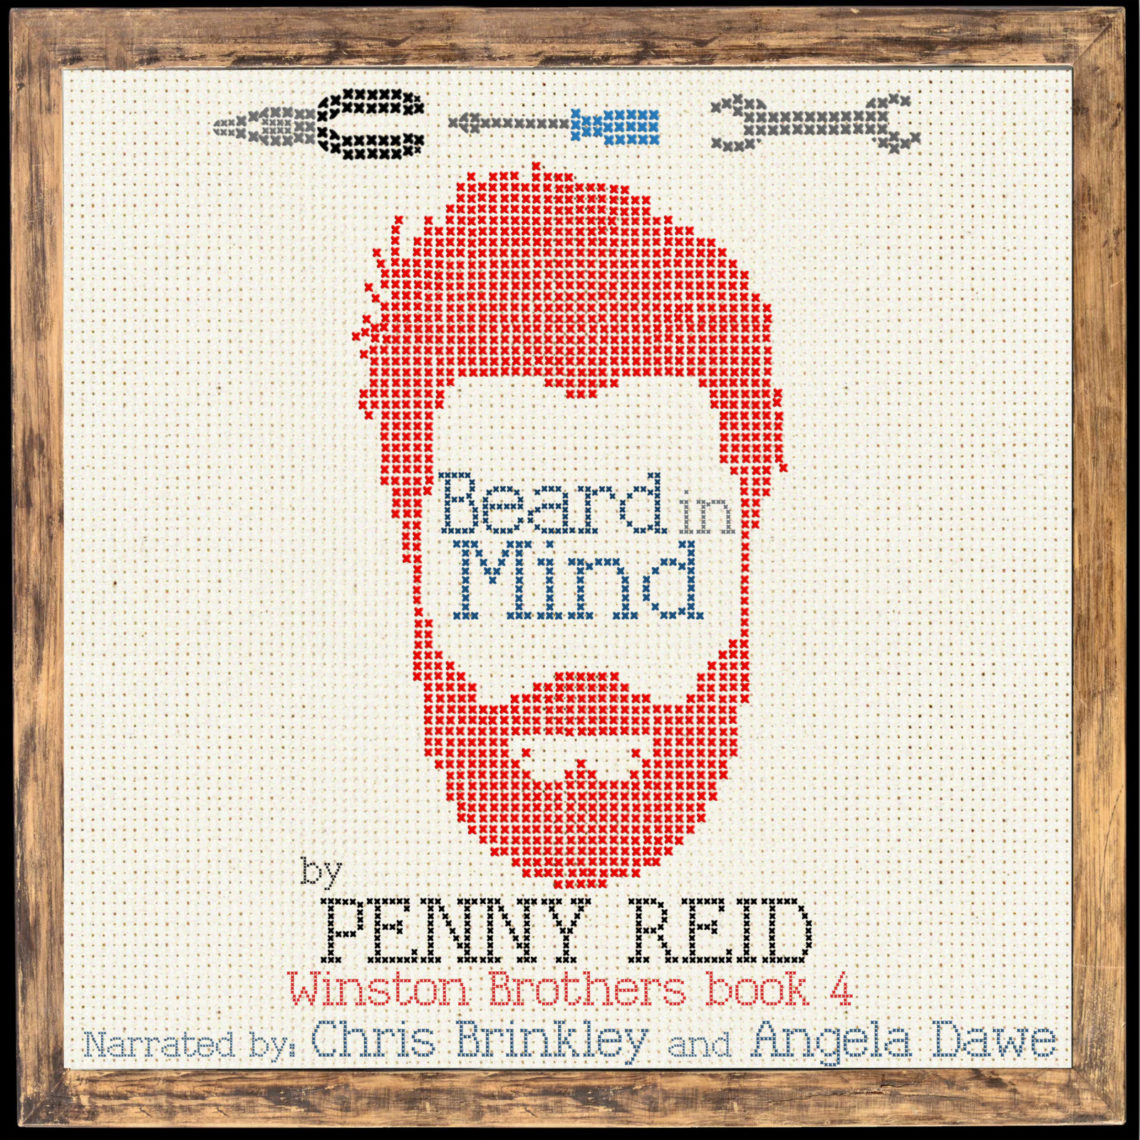 Beard in Mind by Penny Reid